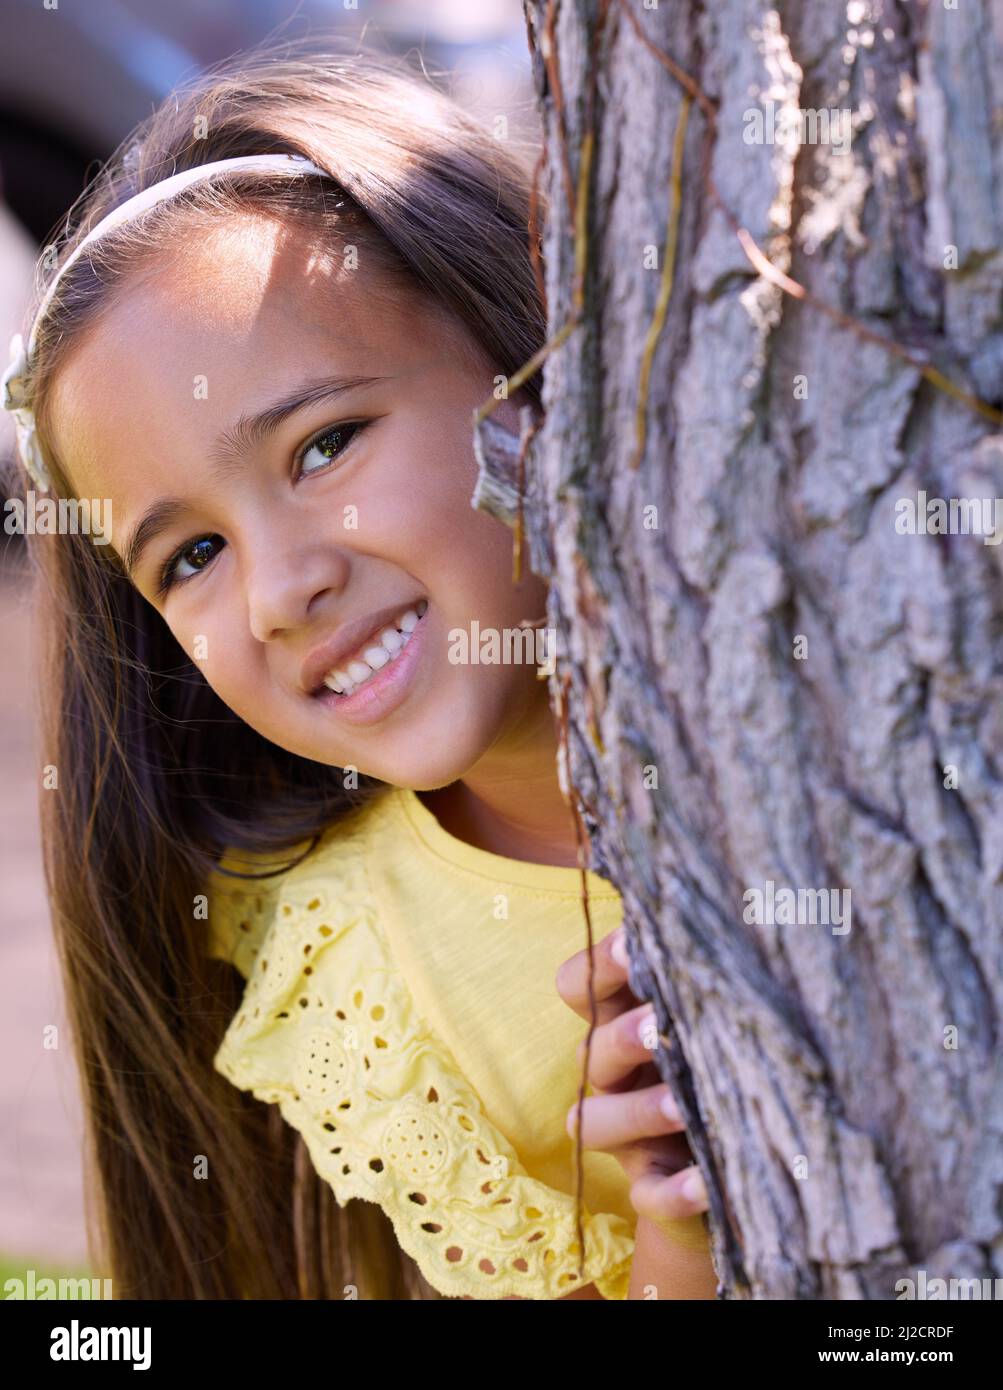 Ne parlez à personne de mon endroit préféré où se cacher et chercher. Photo d'une adorable petite fille qui se cache derrière un arbre. Banque D'Images